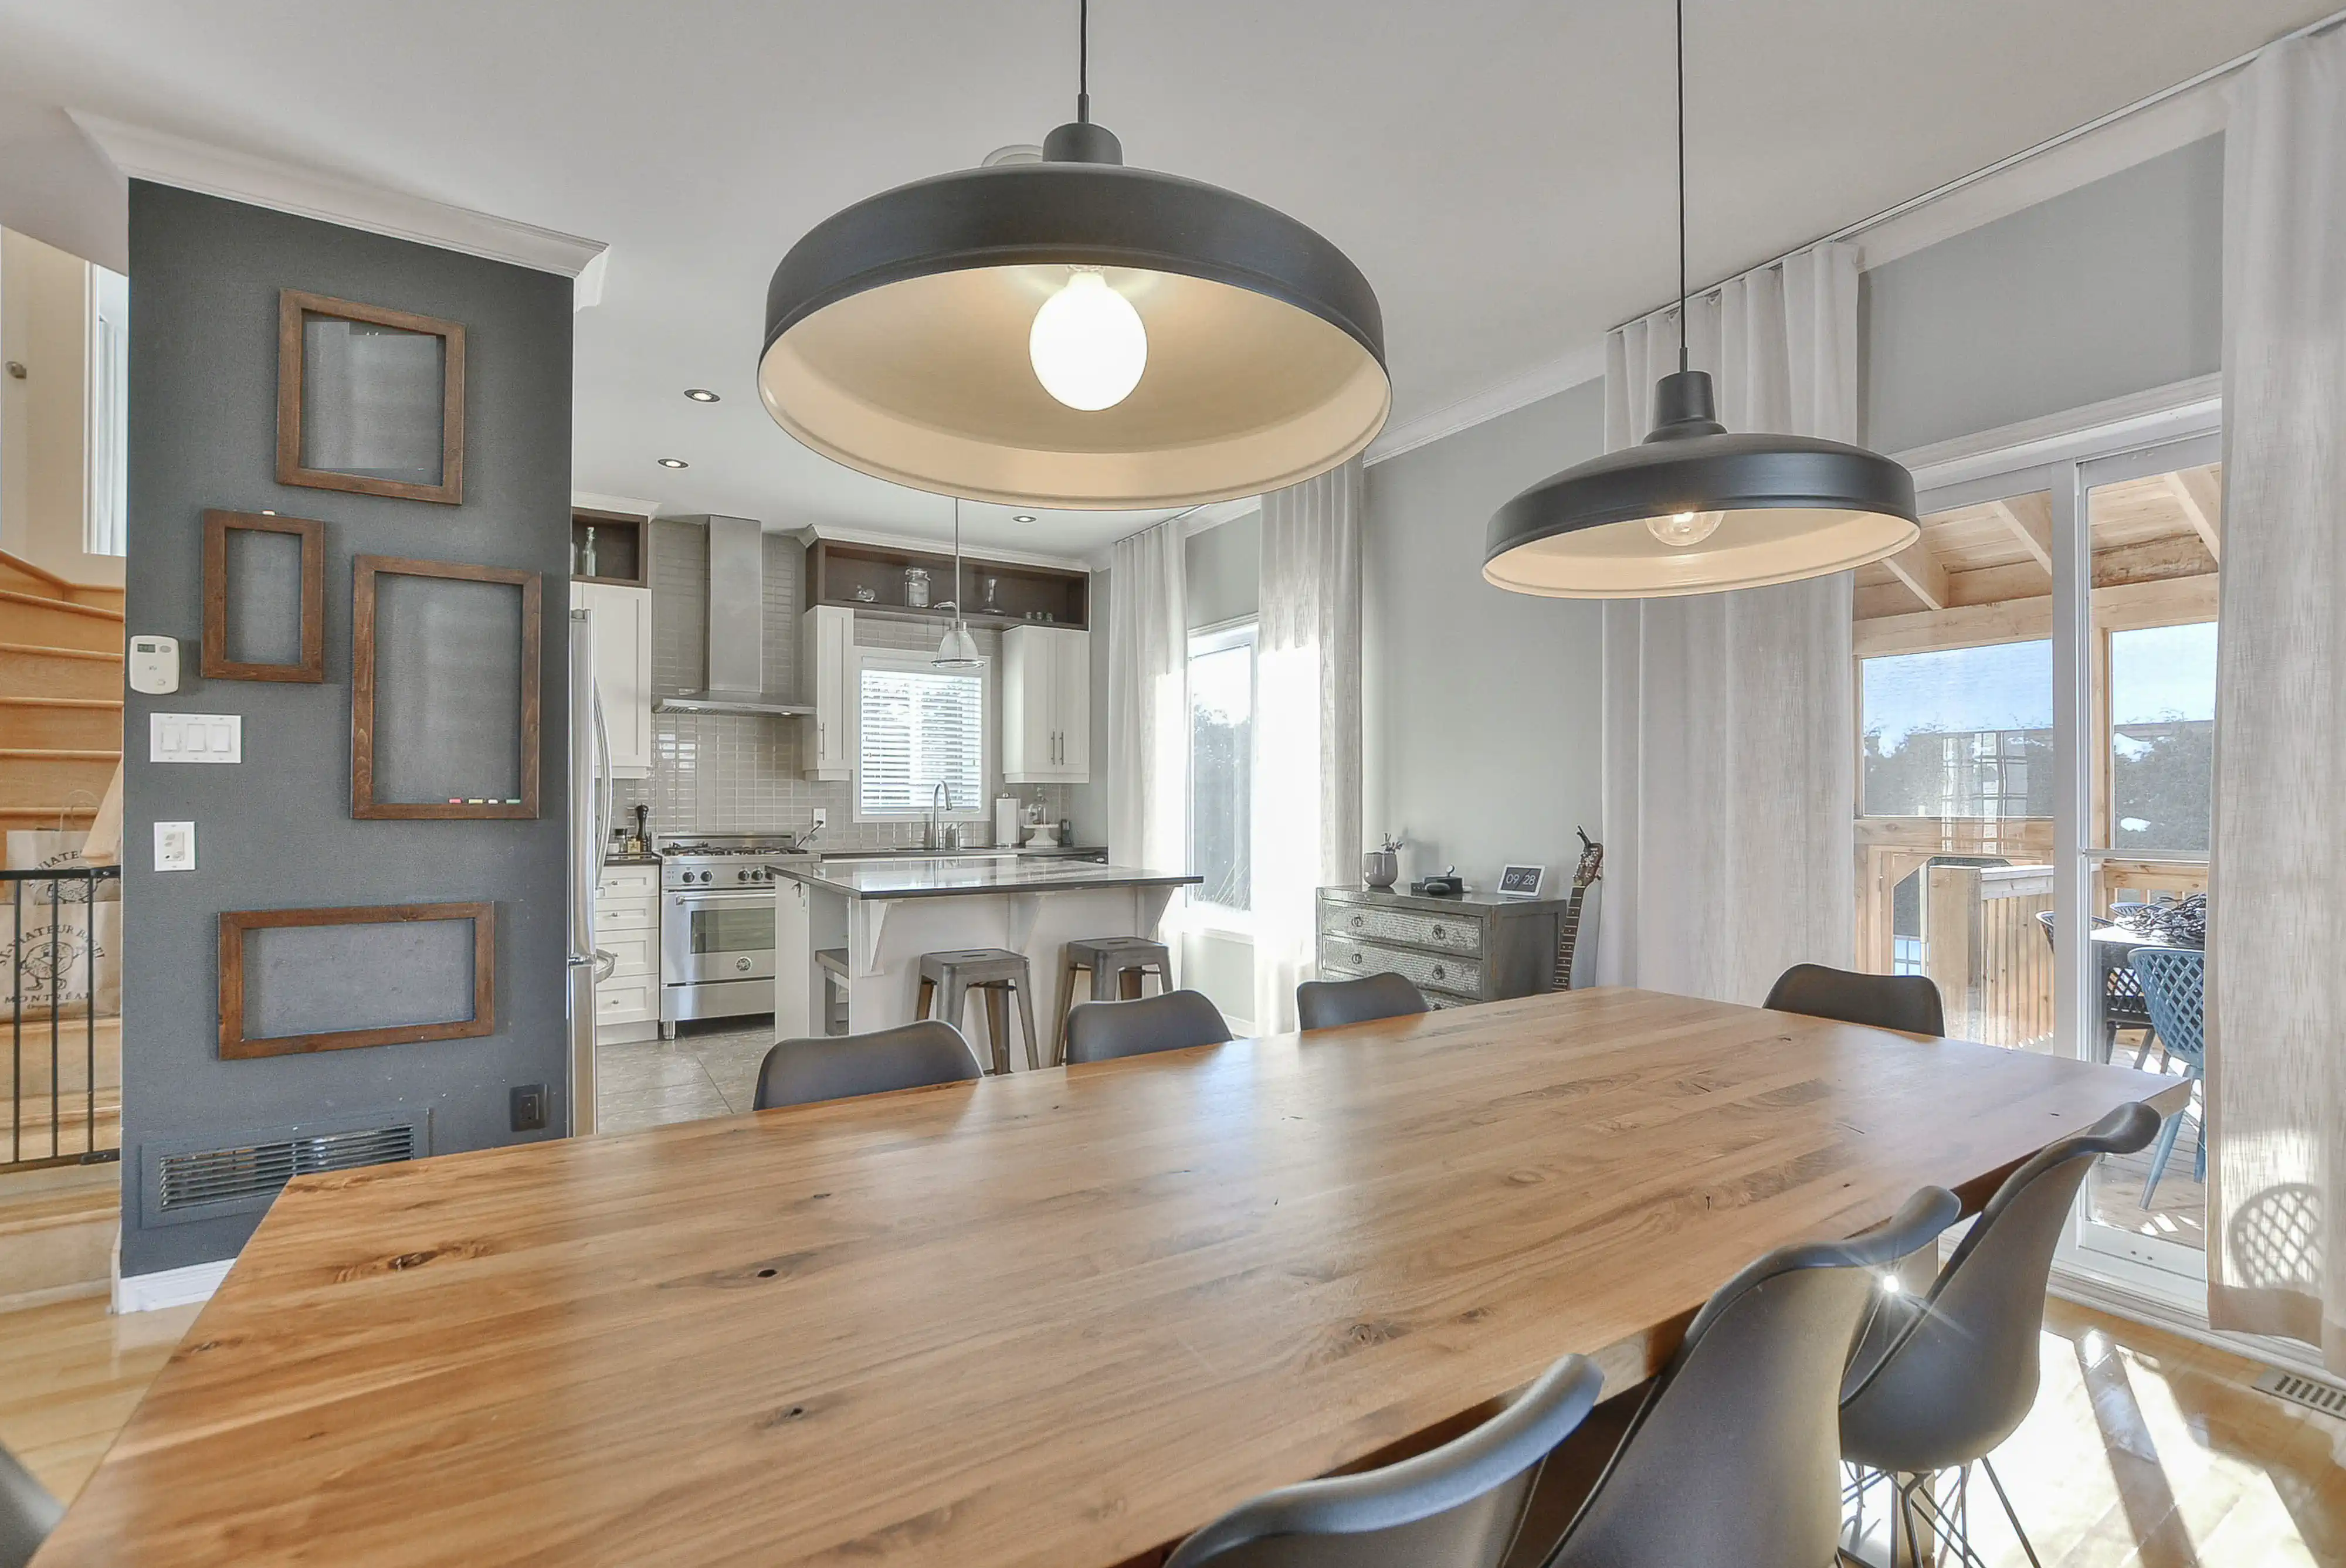 Salle à manger moderne avec une grande table en bois, des chaises noires et une vue sur la cuisine, intérieur signé Sarah Brown Design